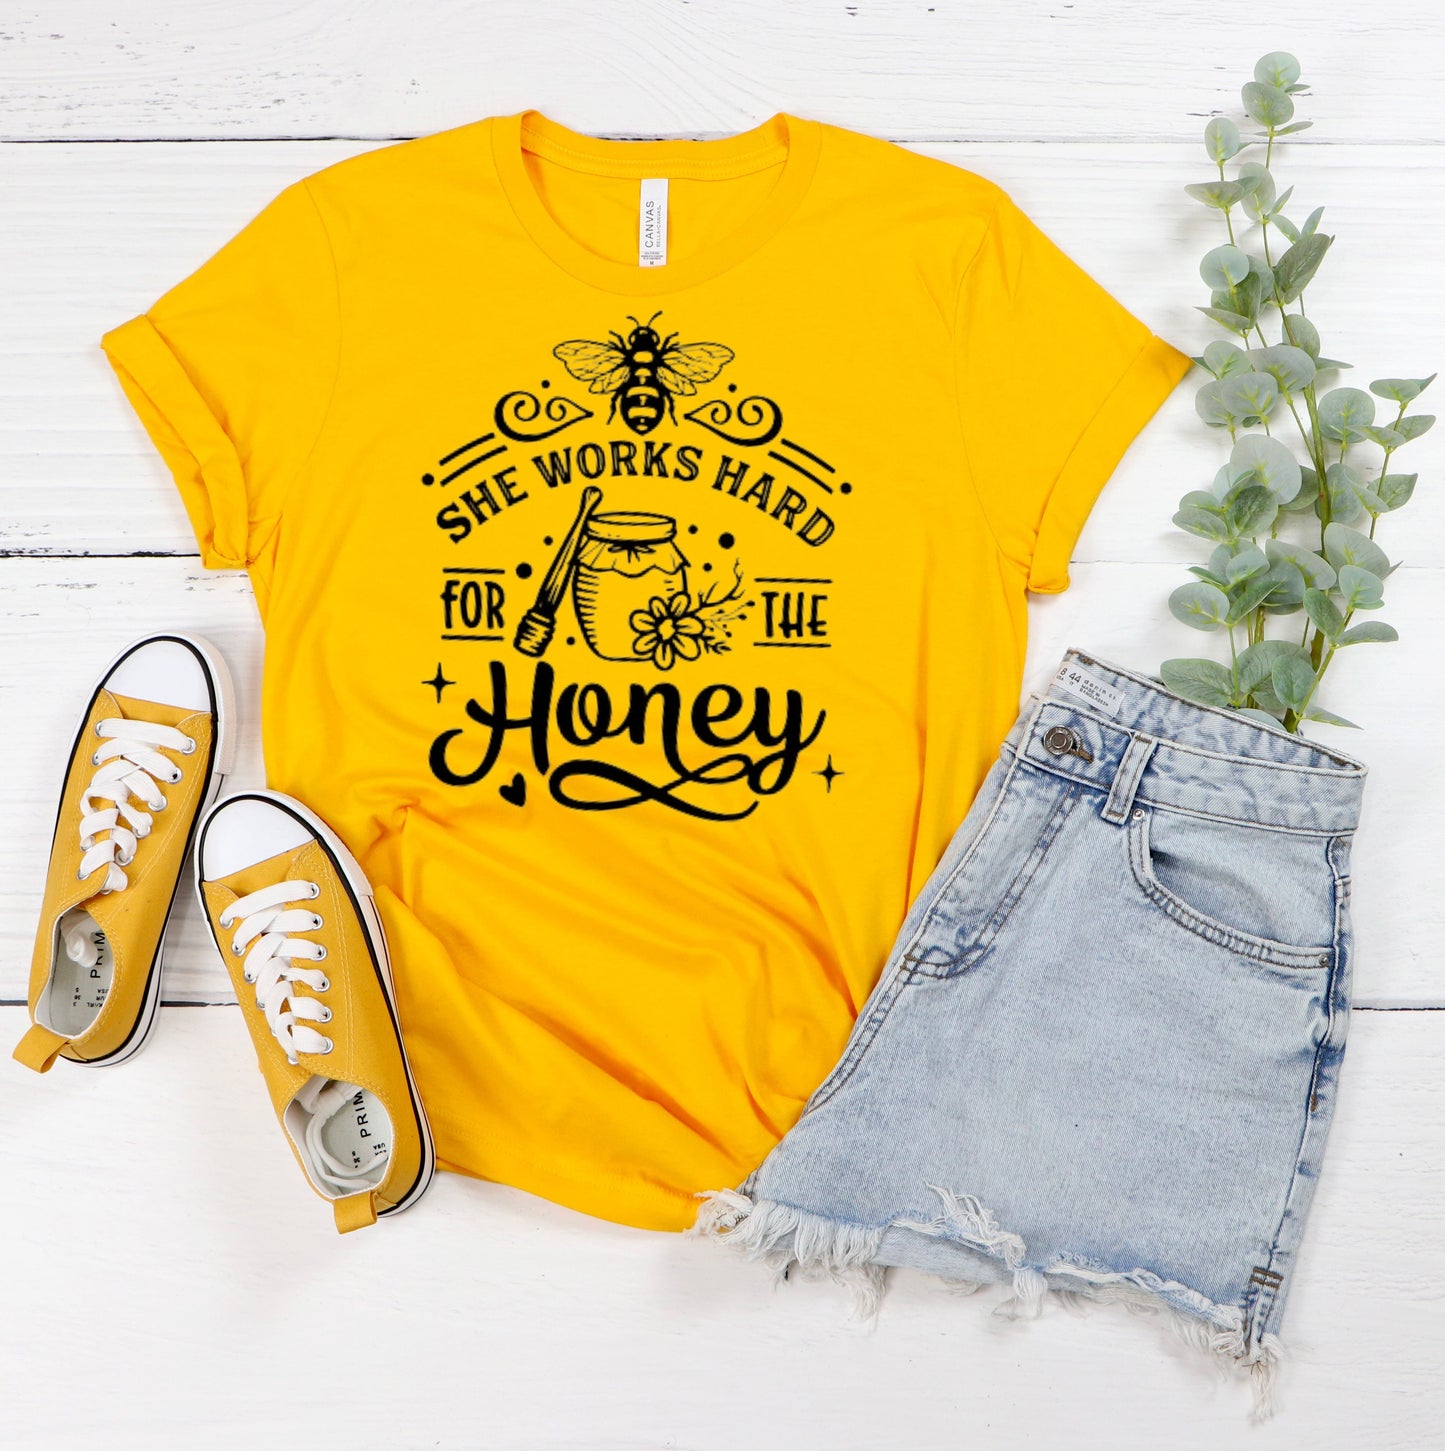 She Works Hard For The Honey T-Shirt